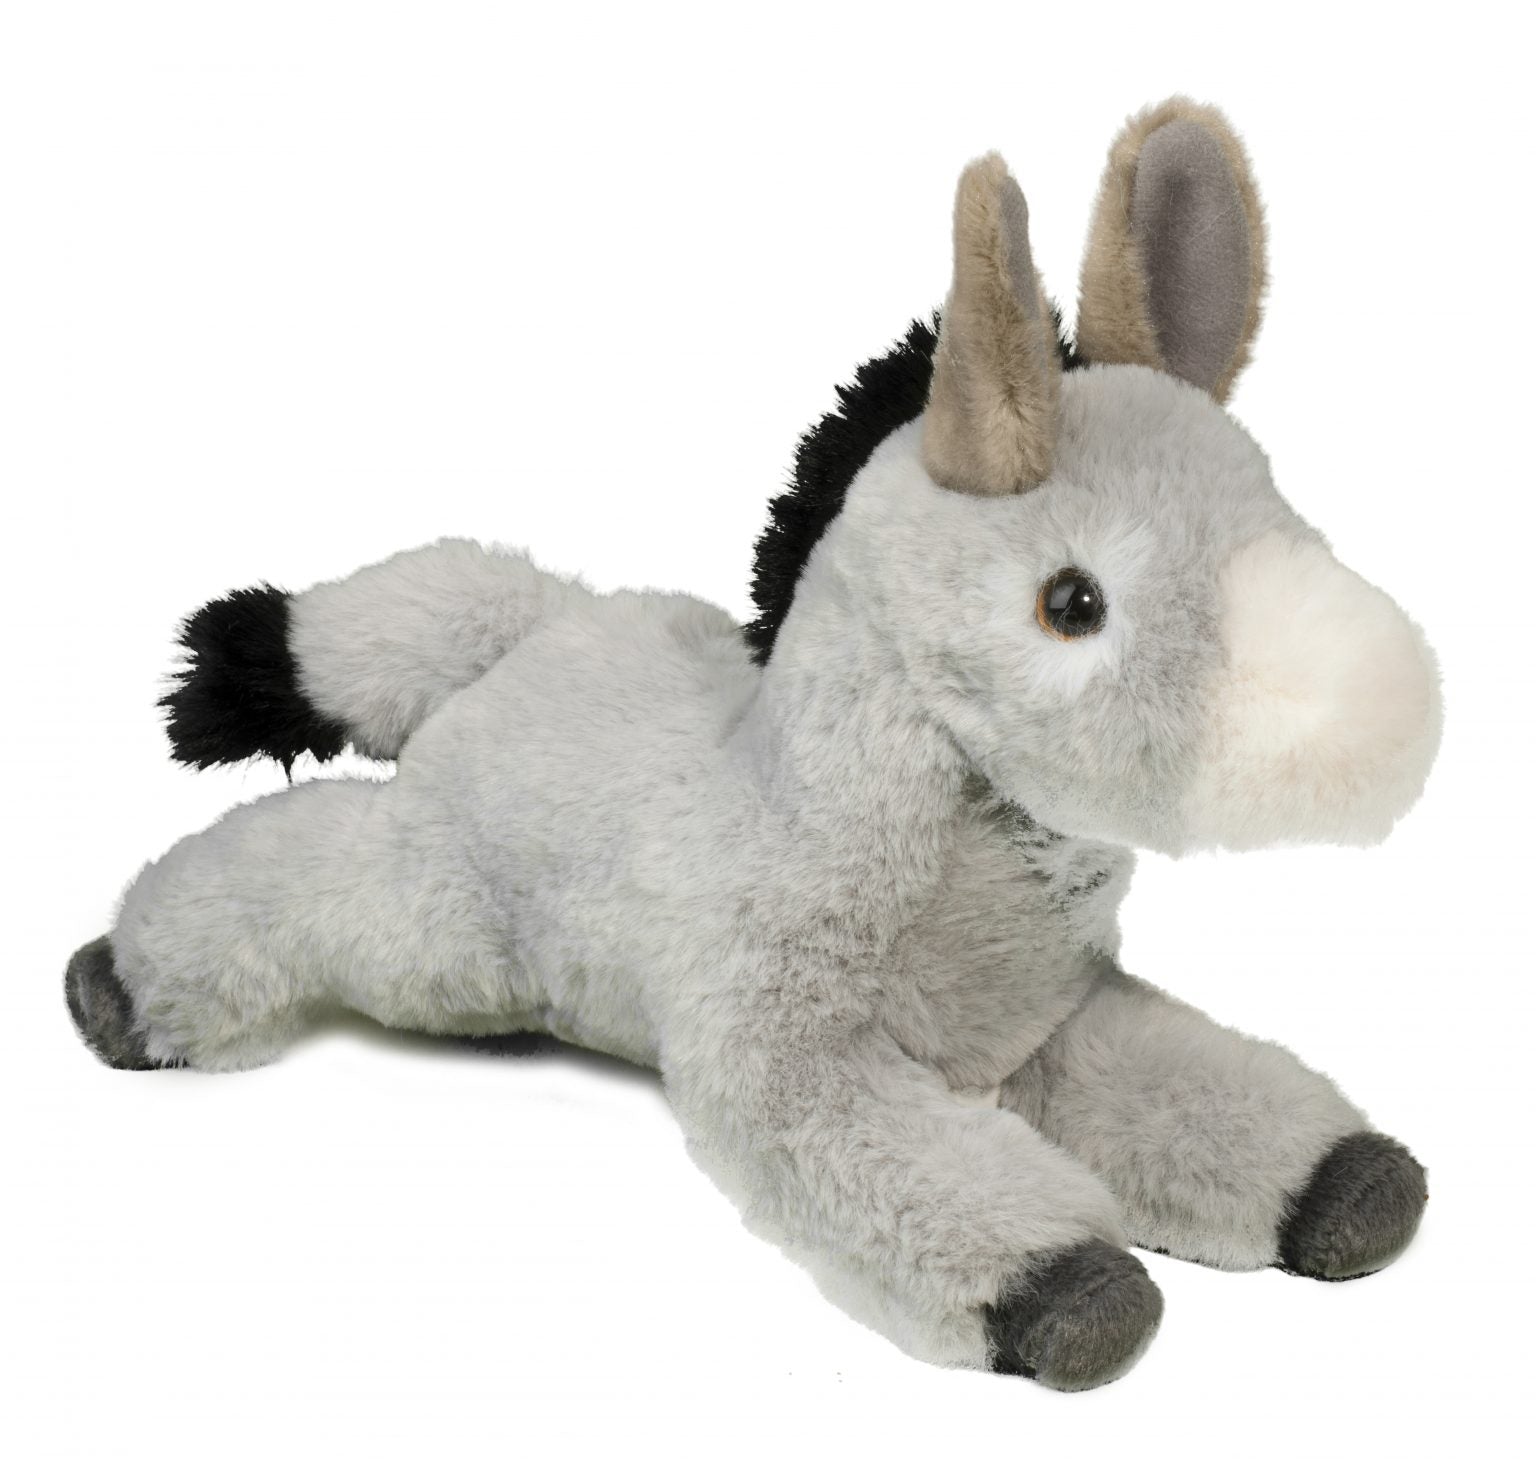 Skeffy Floppy Donkey by Douglas #1550